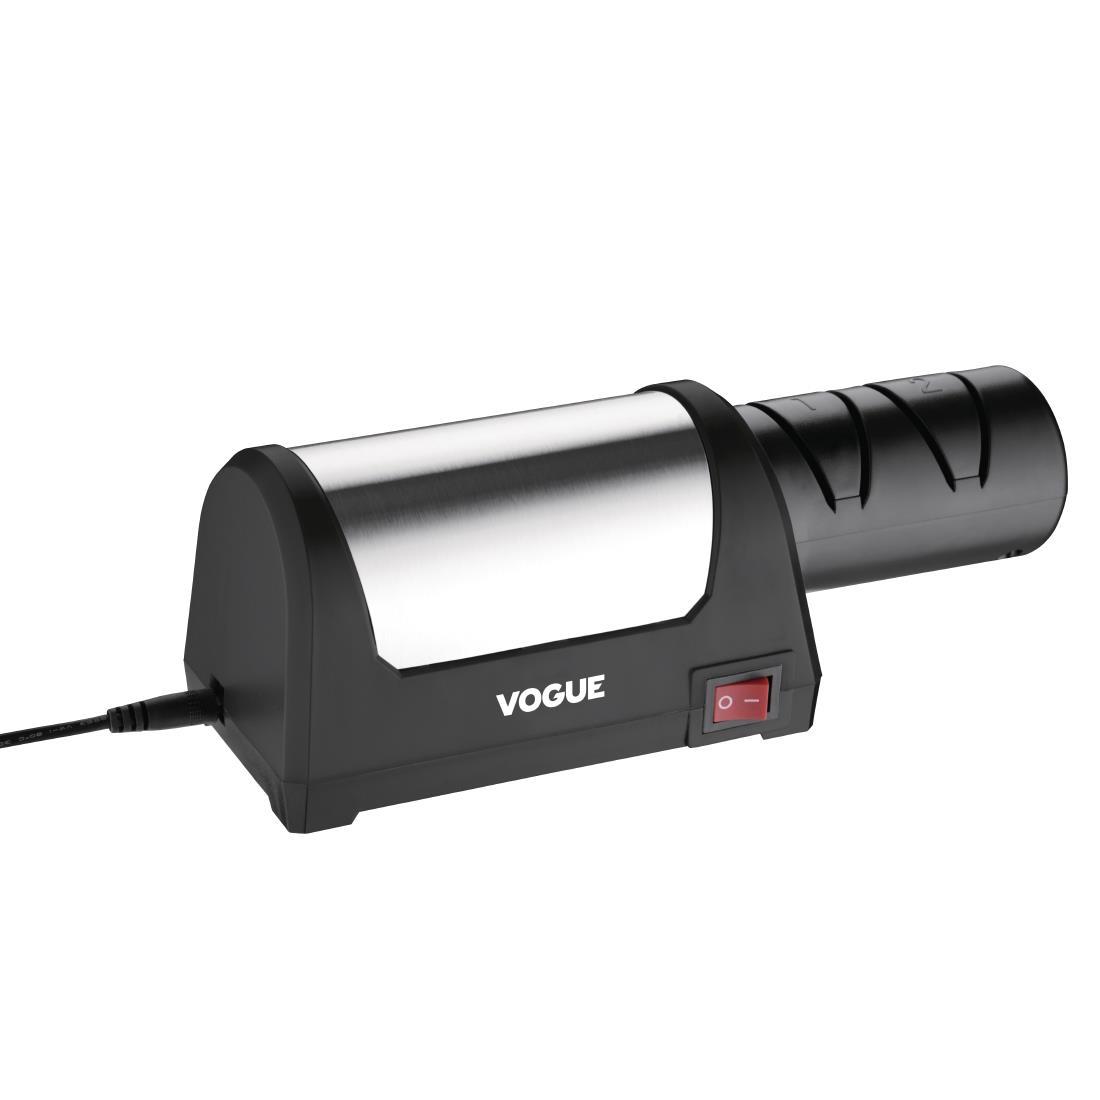 Vogue Electric Knife Sharpener - GD232  - 1